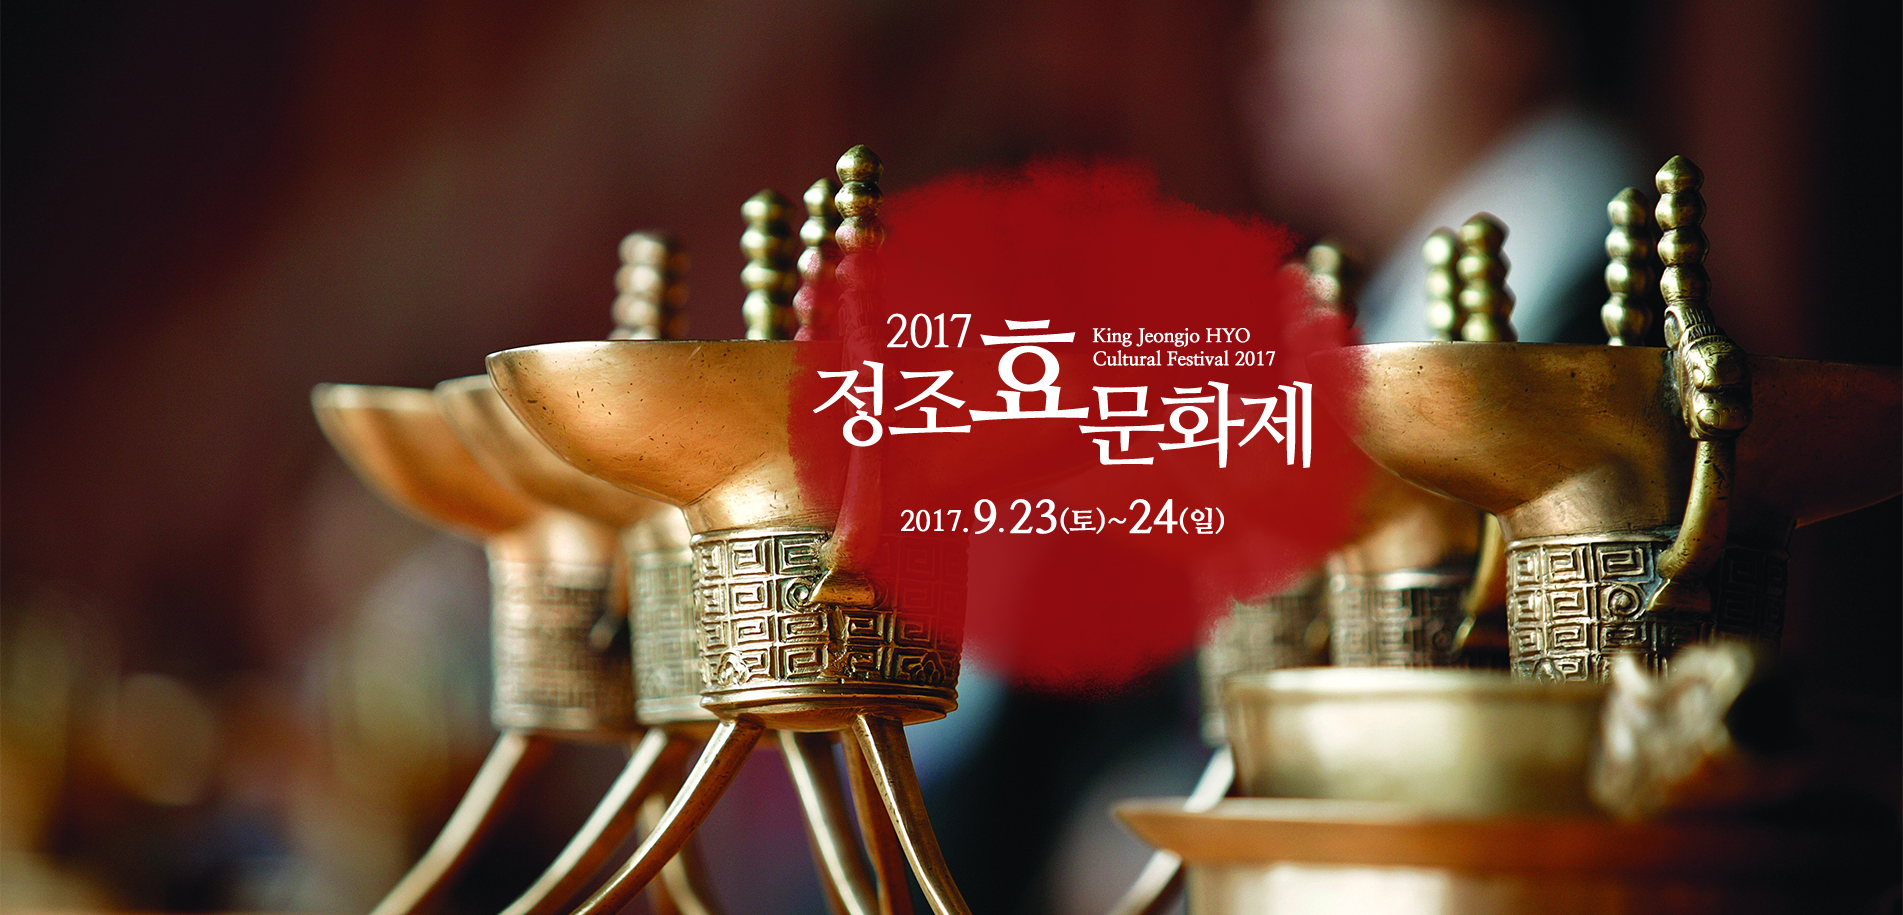 2017 정조 효 문화제 JUNGJO HYO CULTURE FESTIVAL 2017 2017.0.23(토)~24일(일)